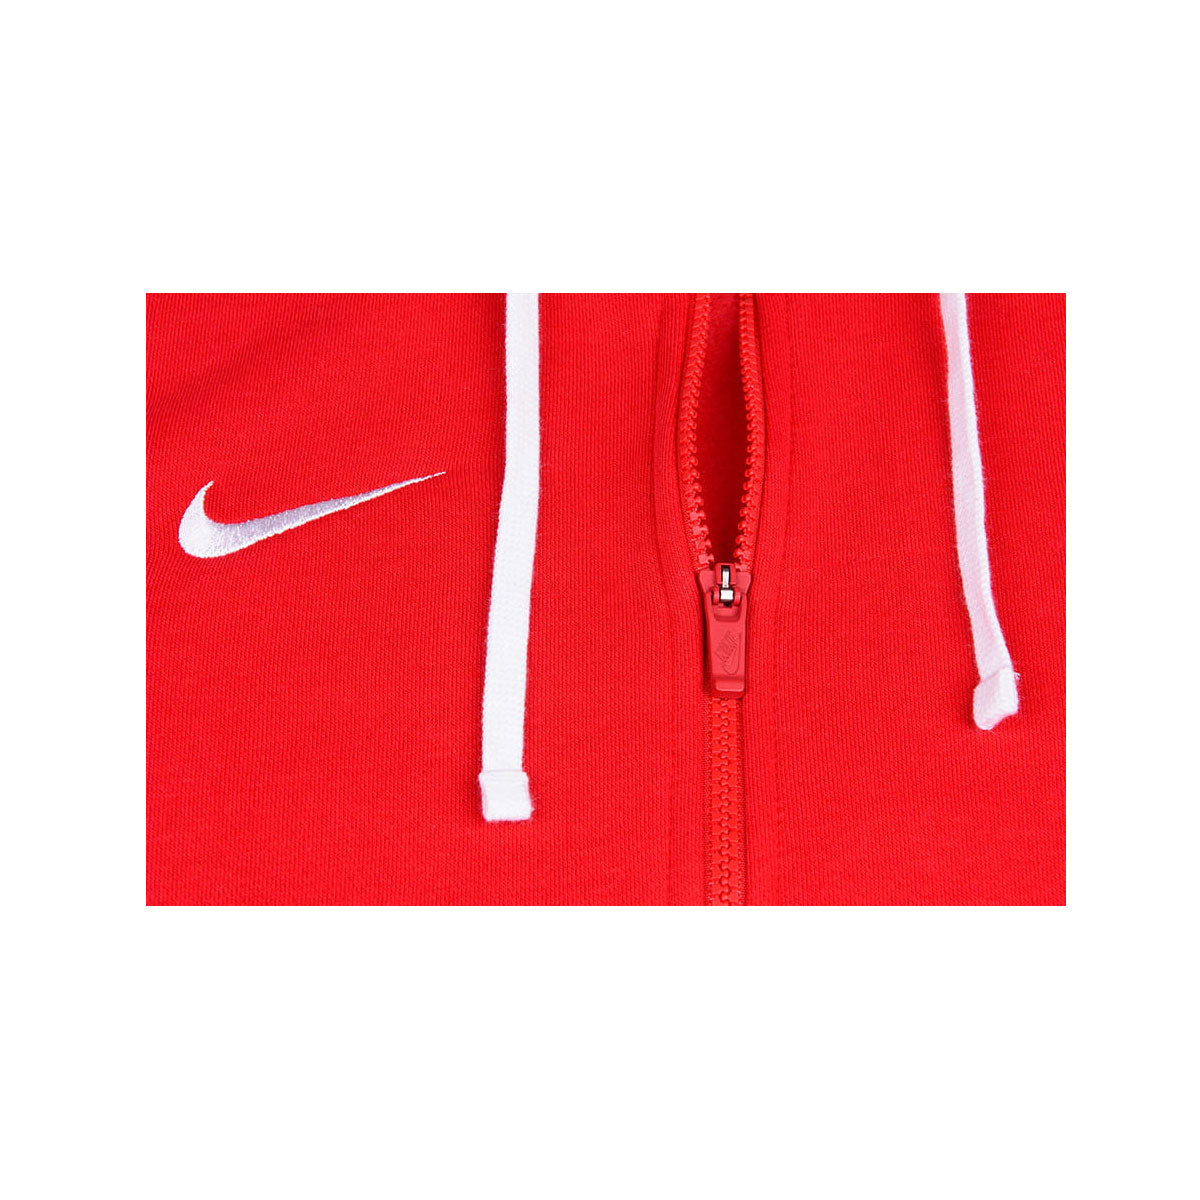 Nike Men's Sportswear Hoodie Fleece Park20 Sweatshirts